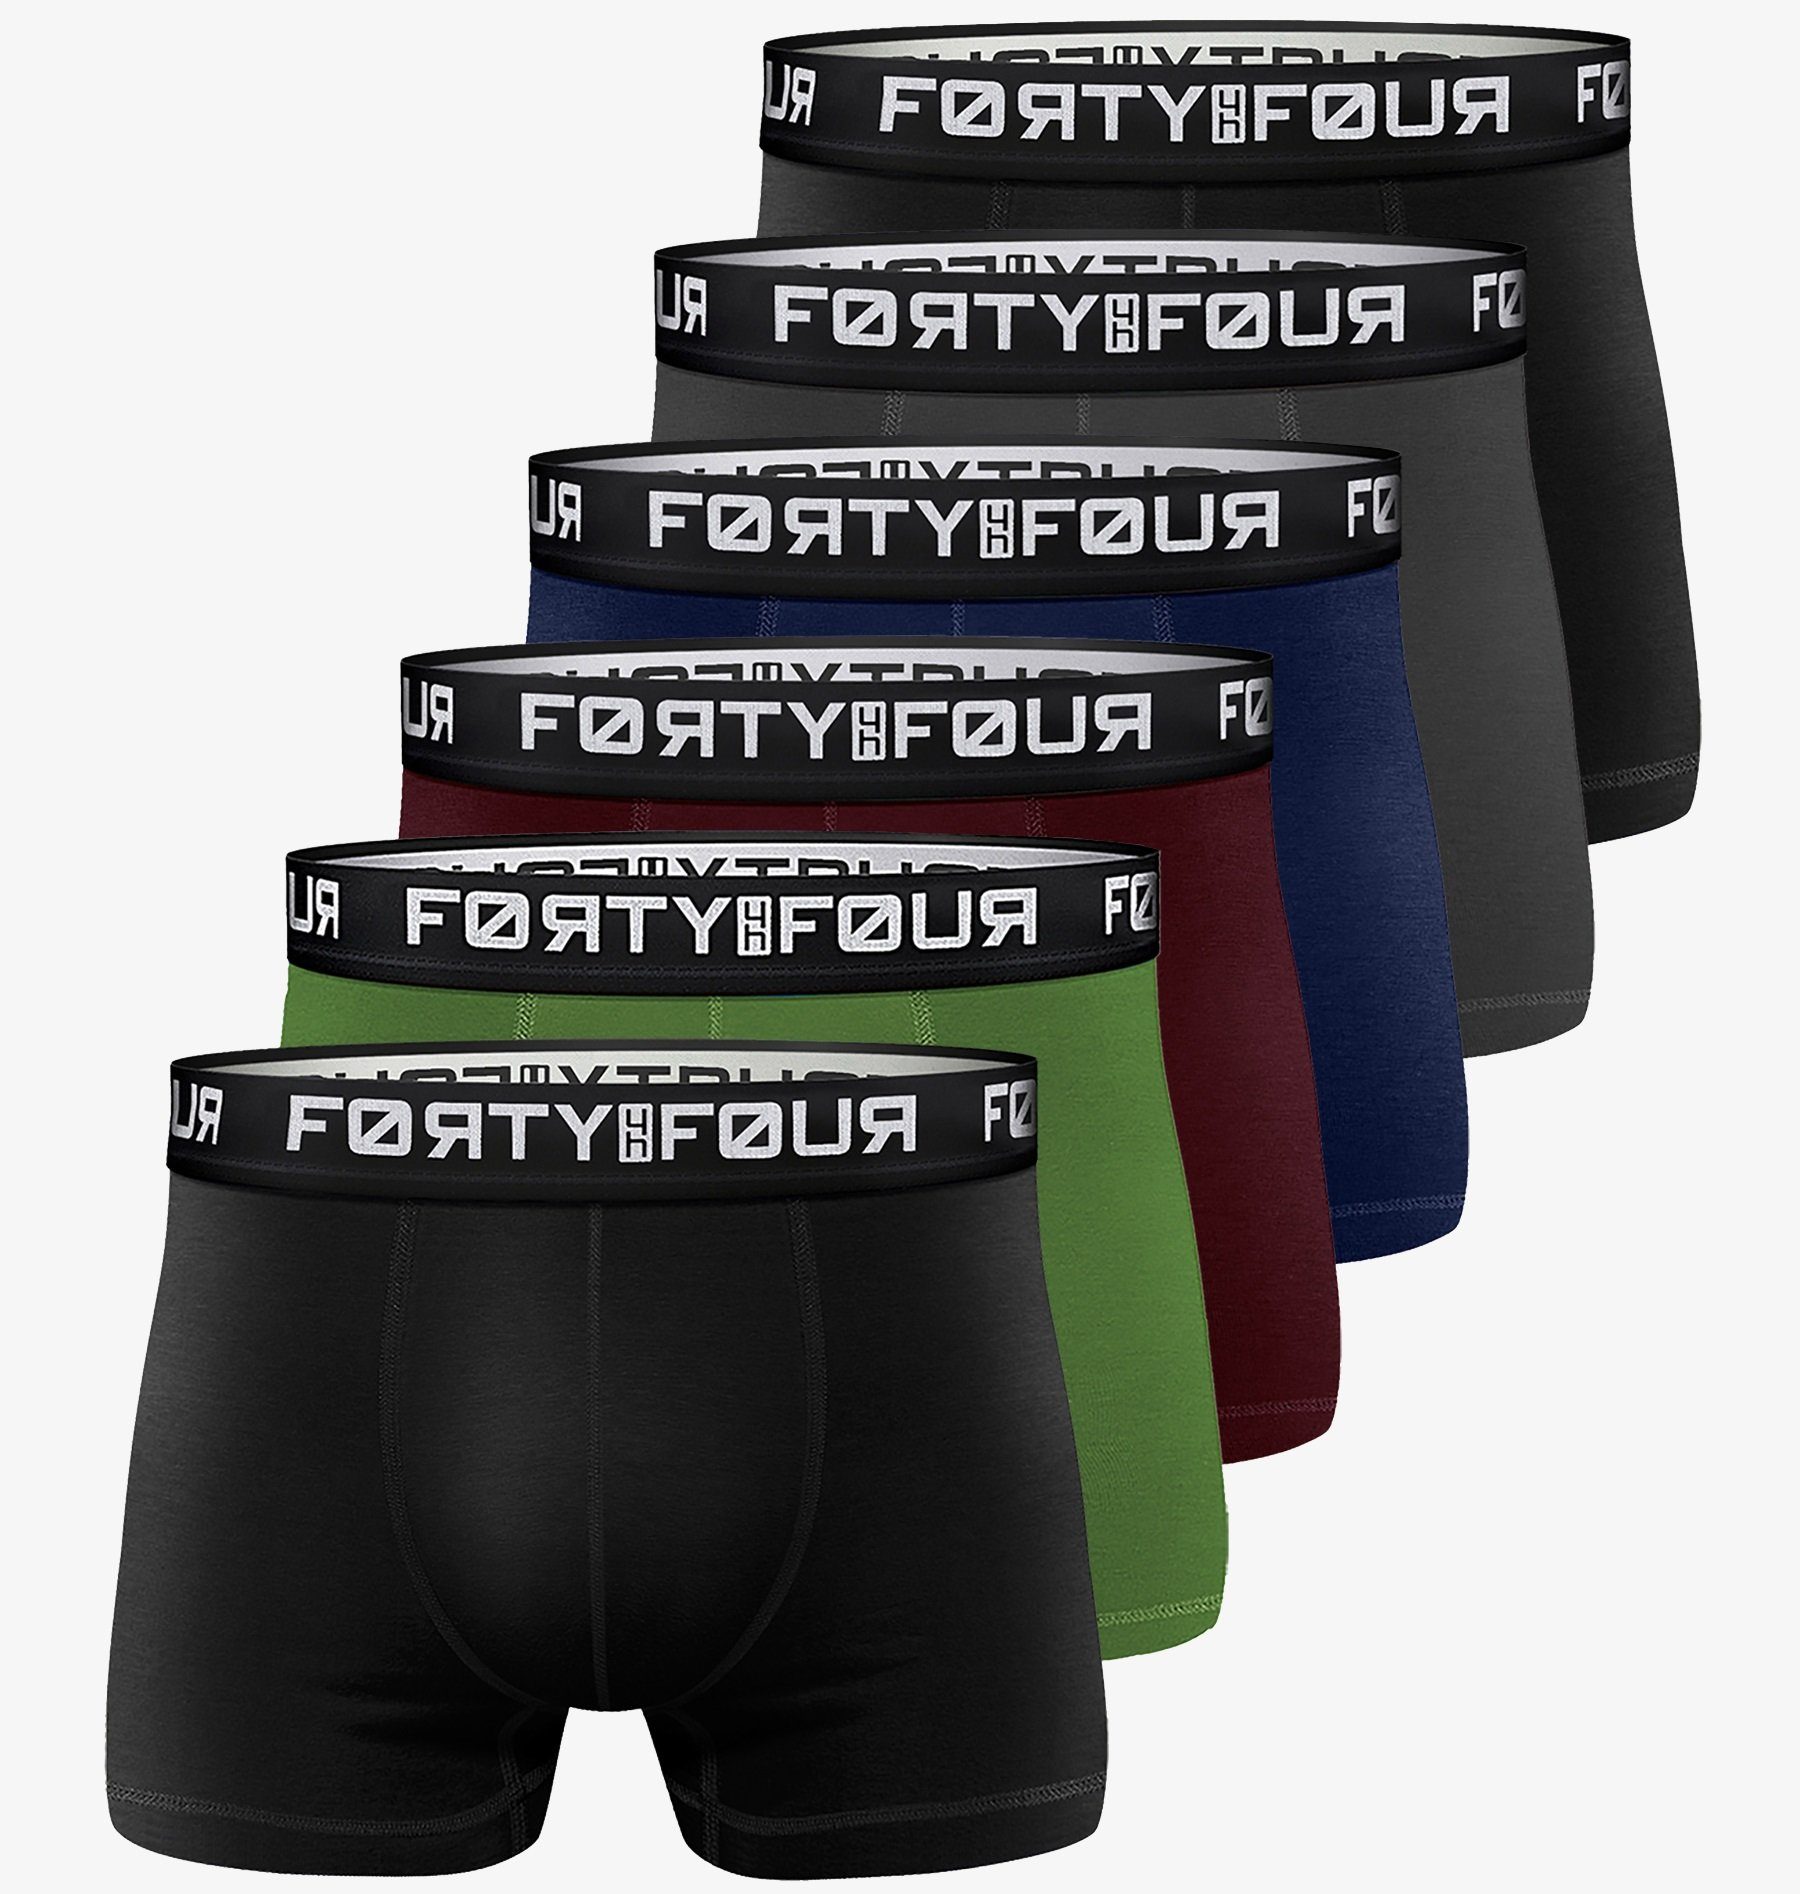 FortyFour Boxershorts 6 Stück S-7XL Männer Unterhosen Mehrfabig